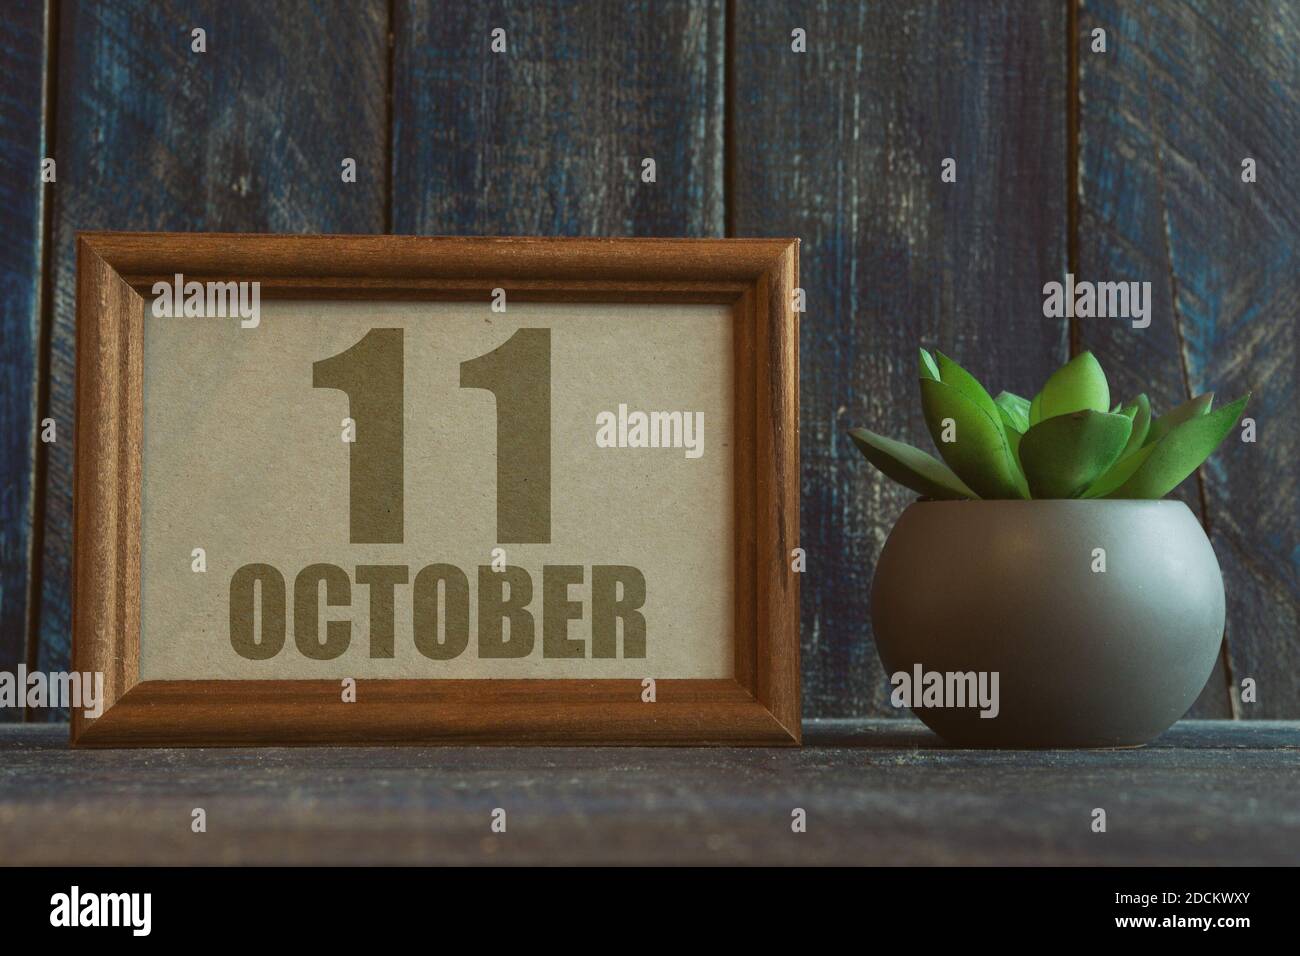 11 octobre. Jour 11 du mois, date dans le cadre à côté de succulent sur fond de bois automne mois, jour de l'année concept Banque D'Images